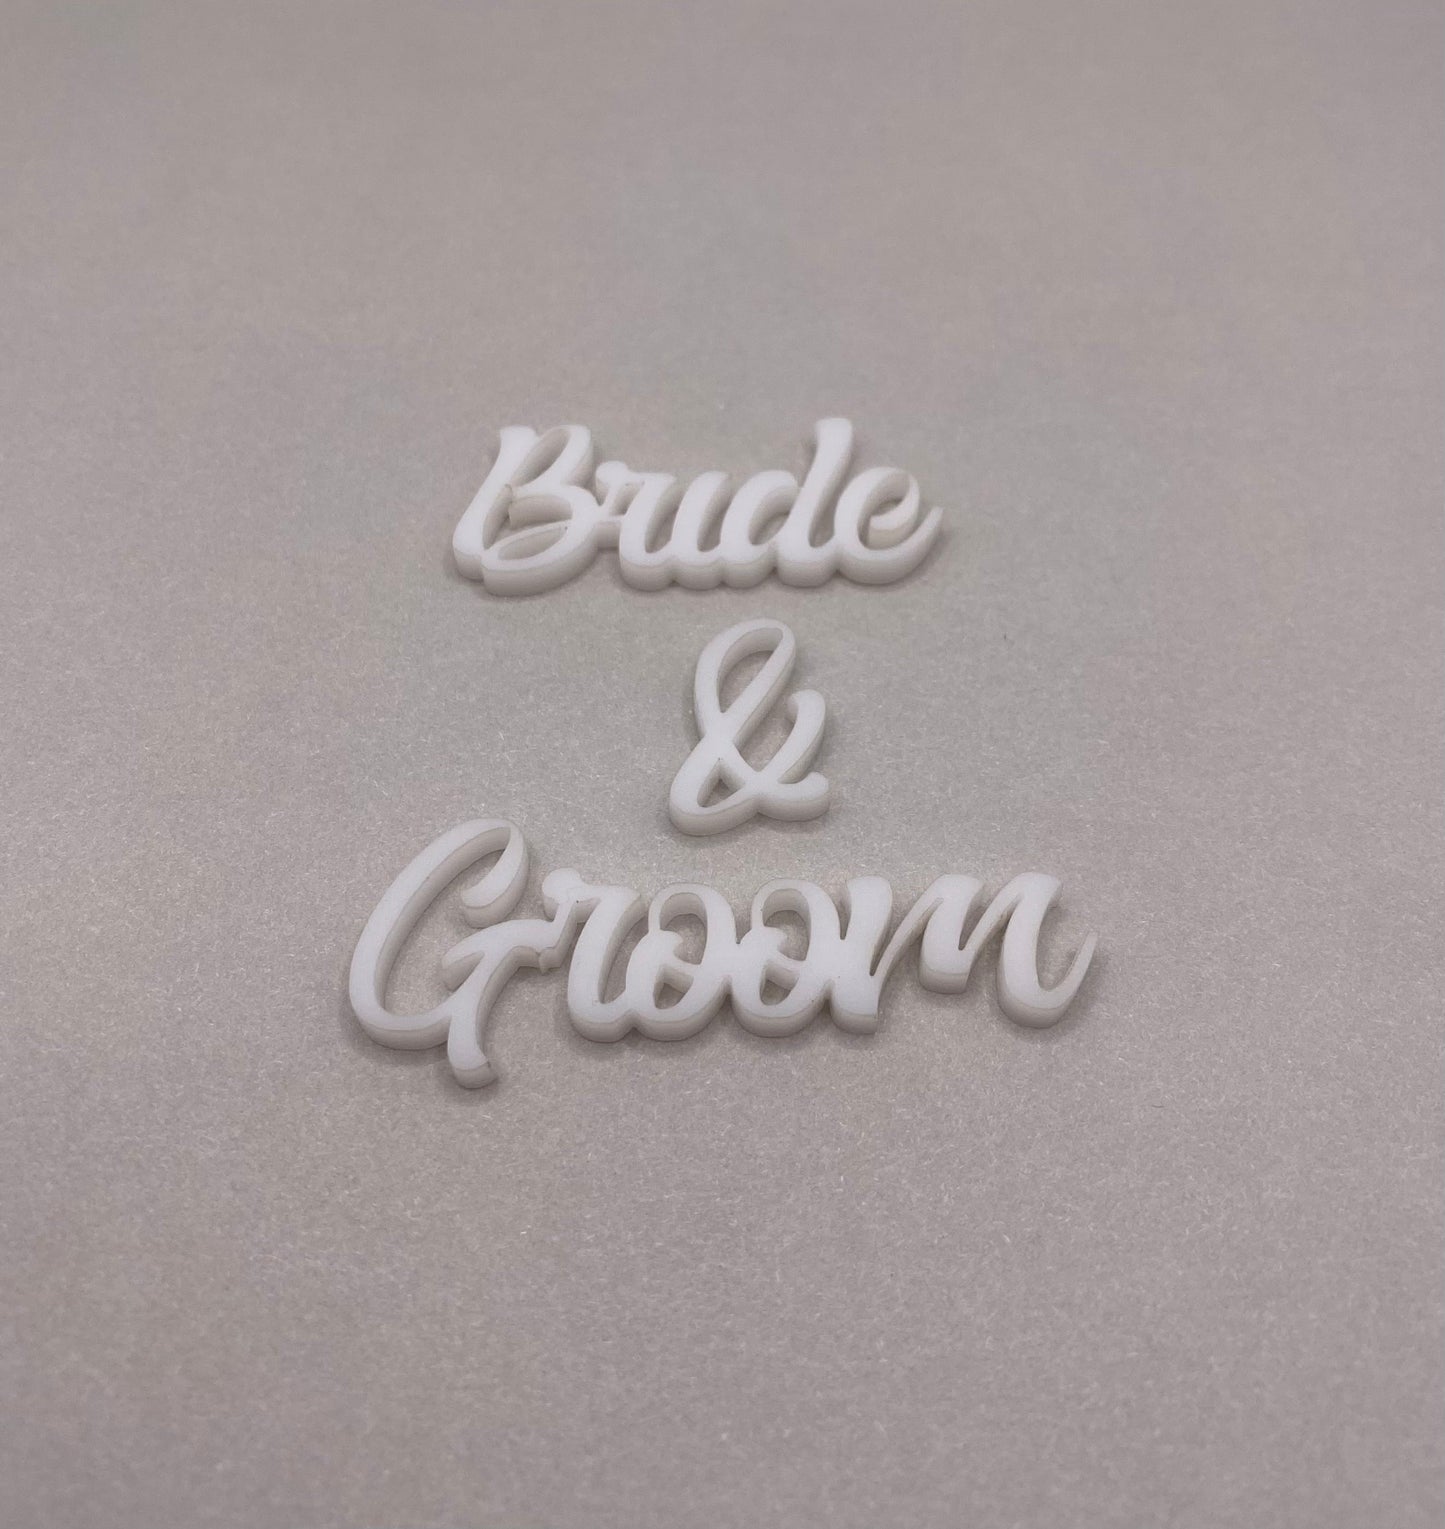 Bride & Groom - Creative Designs By Kari